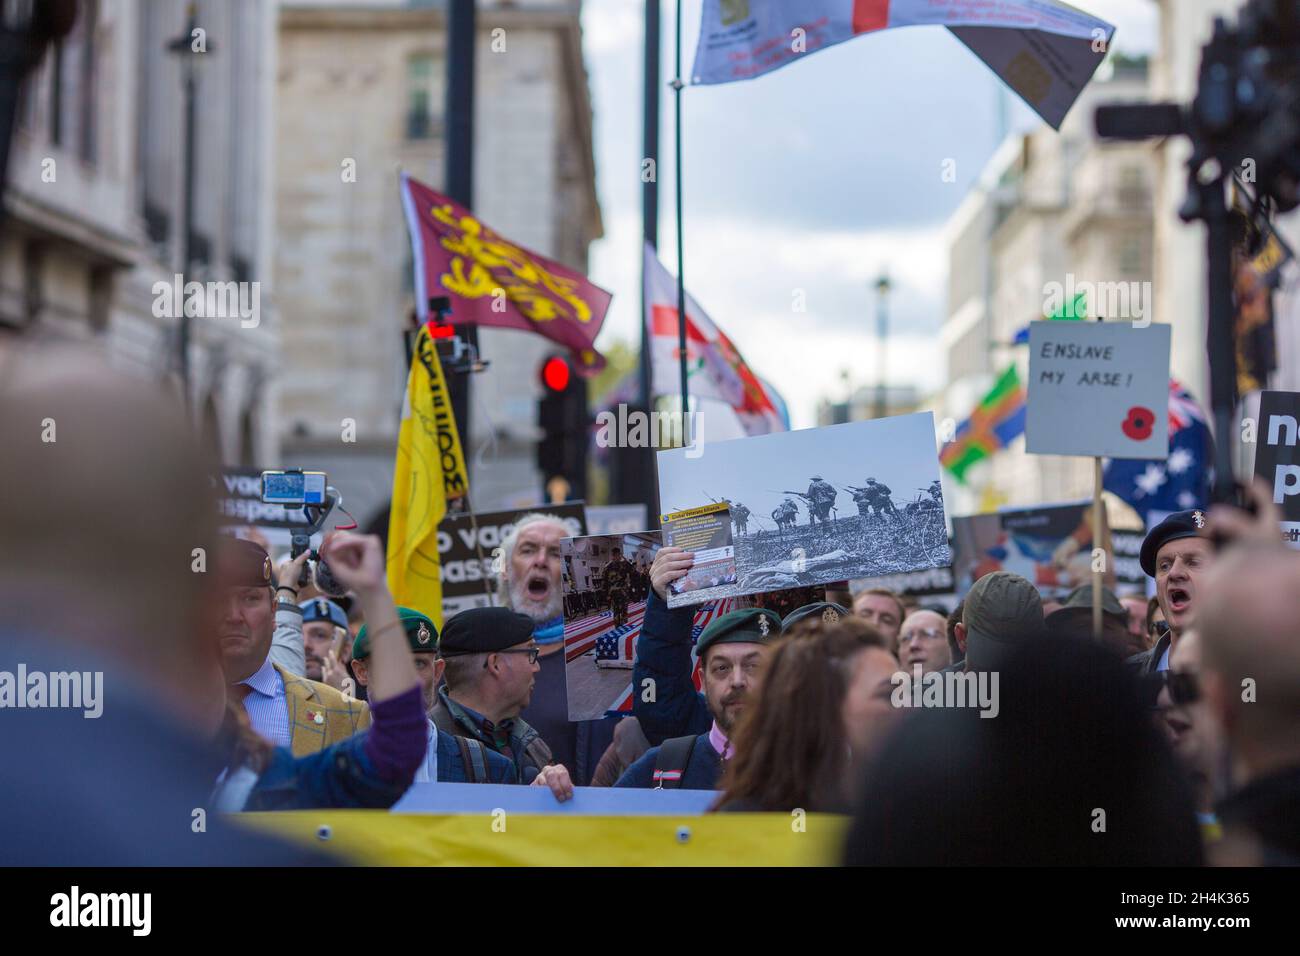 Le persone si riuniscono e marciano durante un raduno Unite per la libertà contro i passaporti dei vaccini nel centro di Londra, 30 ottobre 2021. Foto Stock